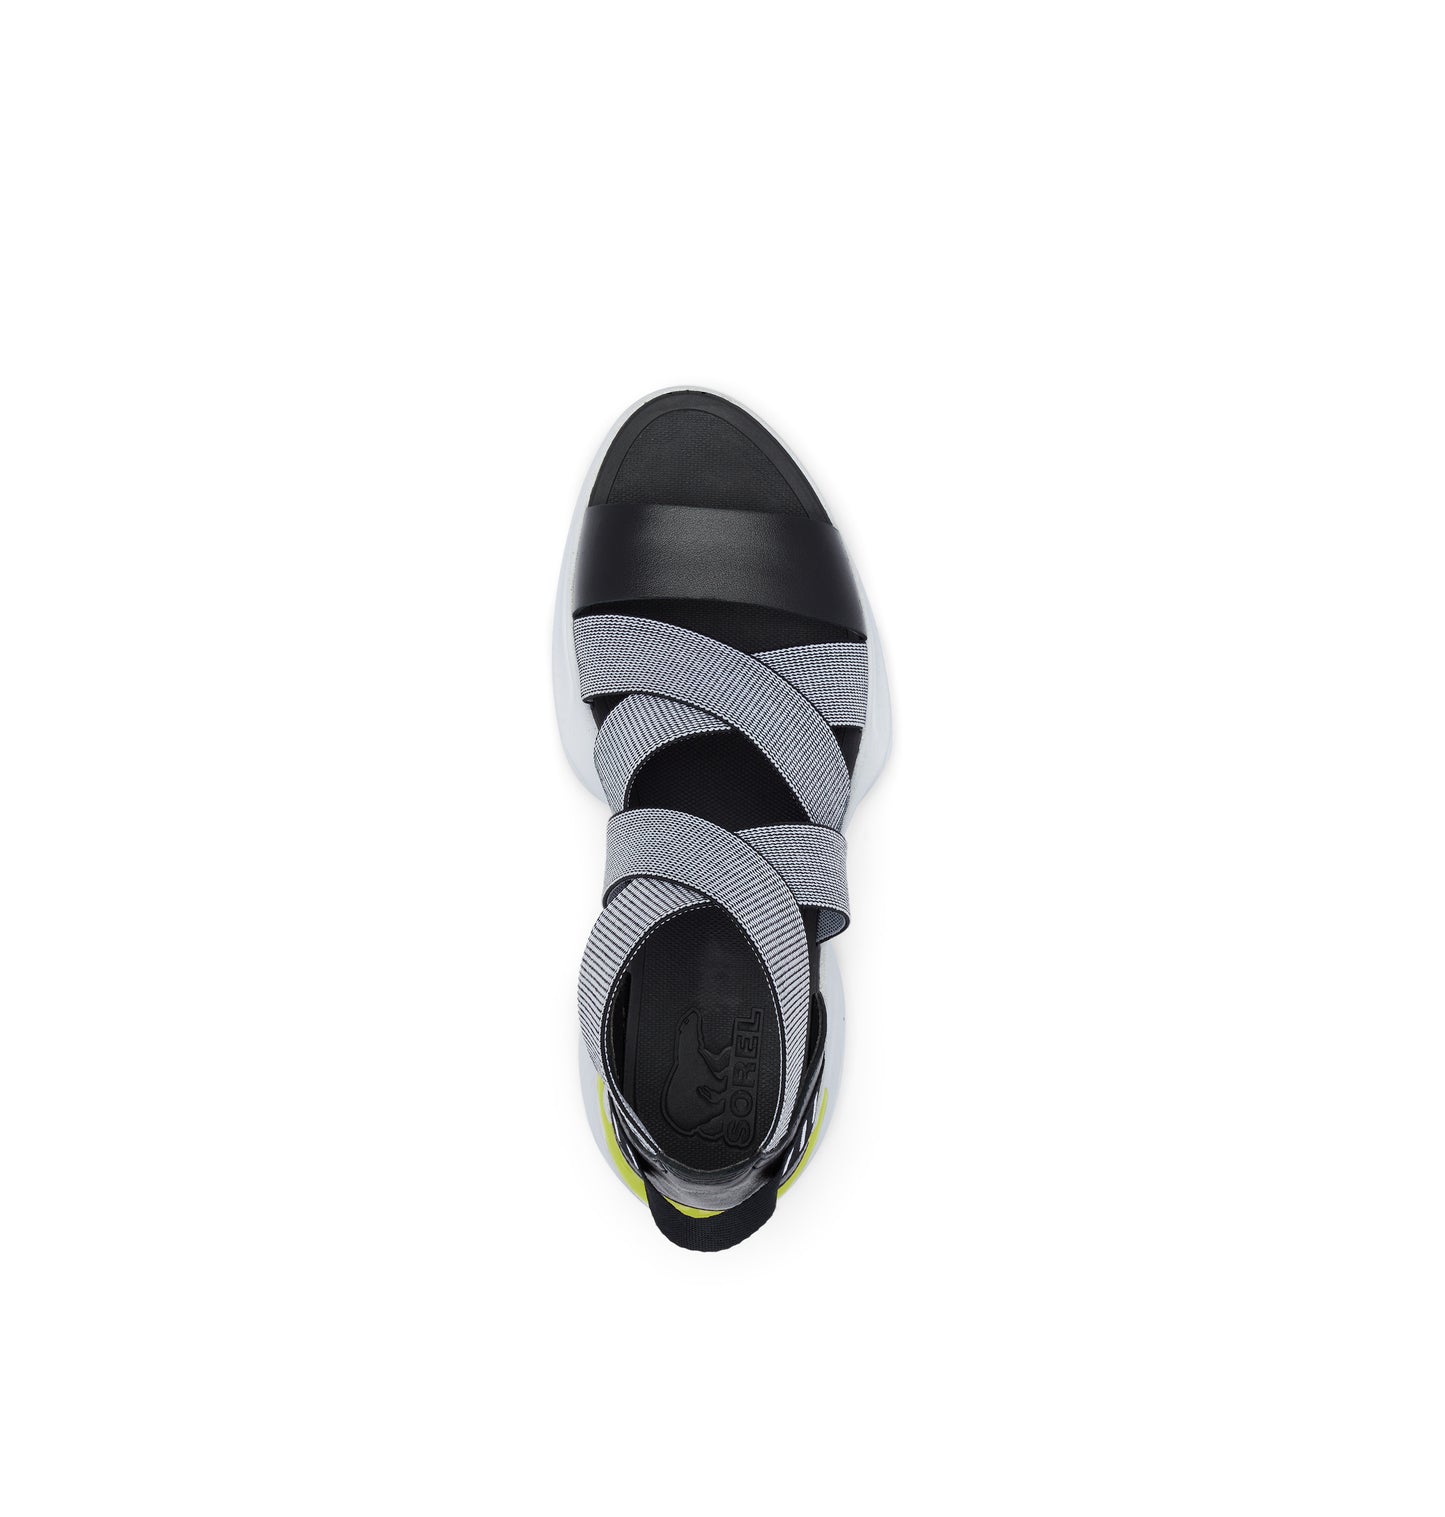 Sorel Women's Explorer Blitz Multistrap Sandal - Black